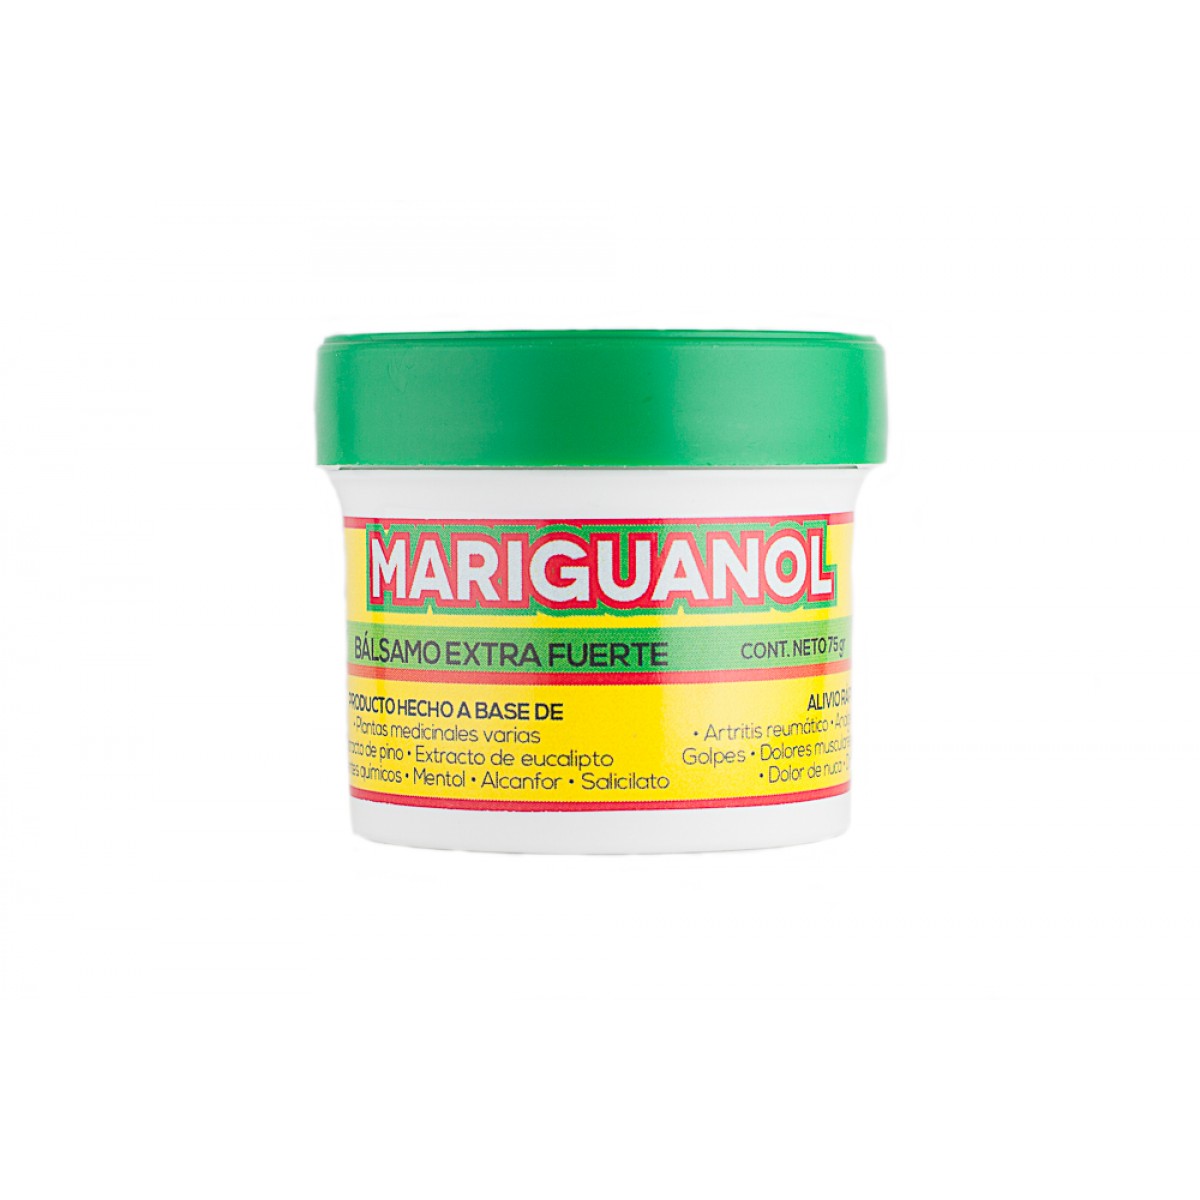 El 'Mariguanol' es un producto no regularizado, elaborado con fórmulas indígenas, y es muy conocido en la república Mexicana (Mialcachofivida)